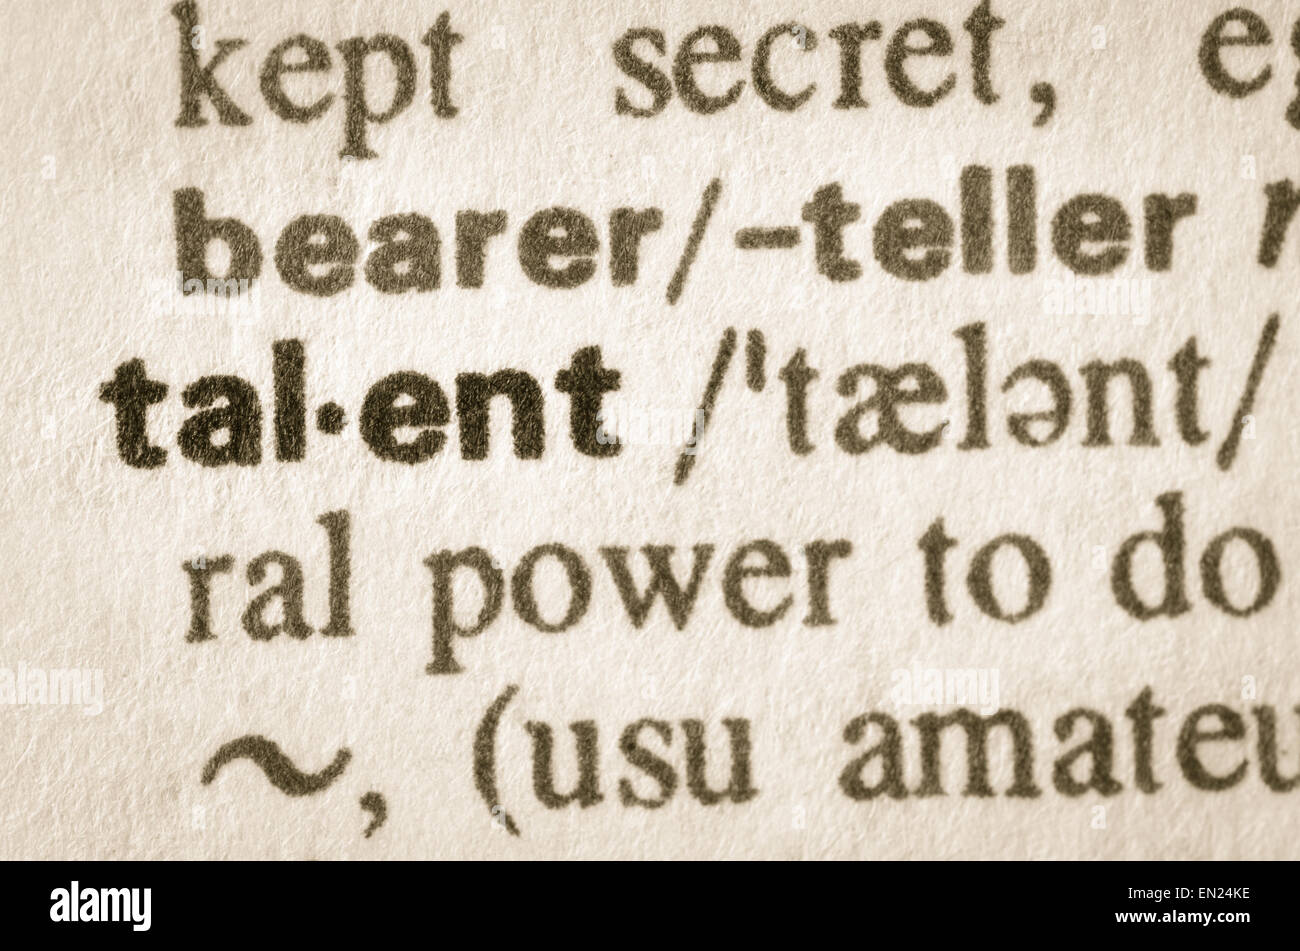 Definición de la palabra en el diccionario de talentos Foto de stock